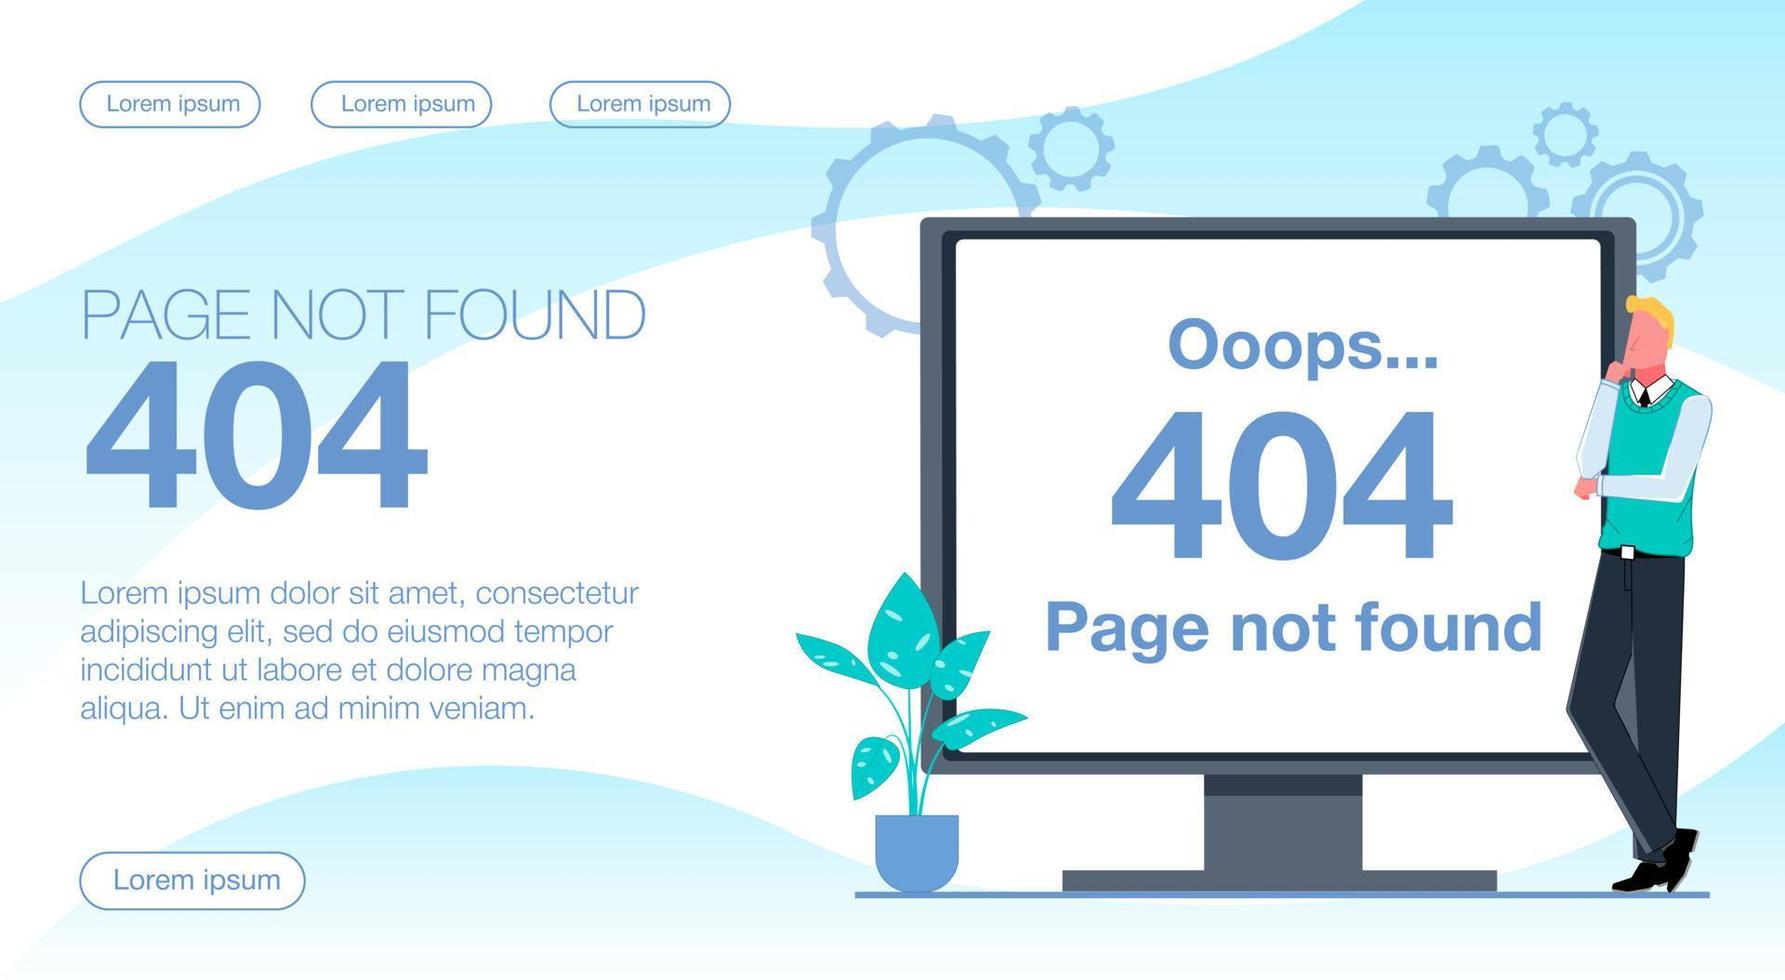 ein 404 nicht gefunden Fehler. Ein Mann steht neben einem Monitor, der einen 404-Fehler anzeigt. flache vektorillustration. vektor